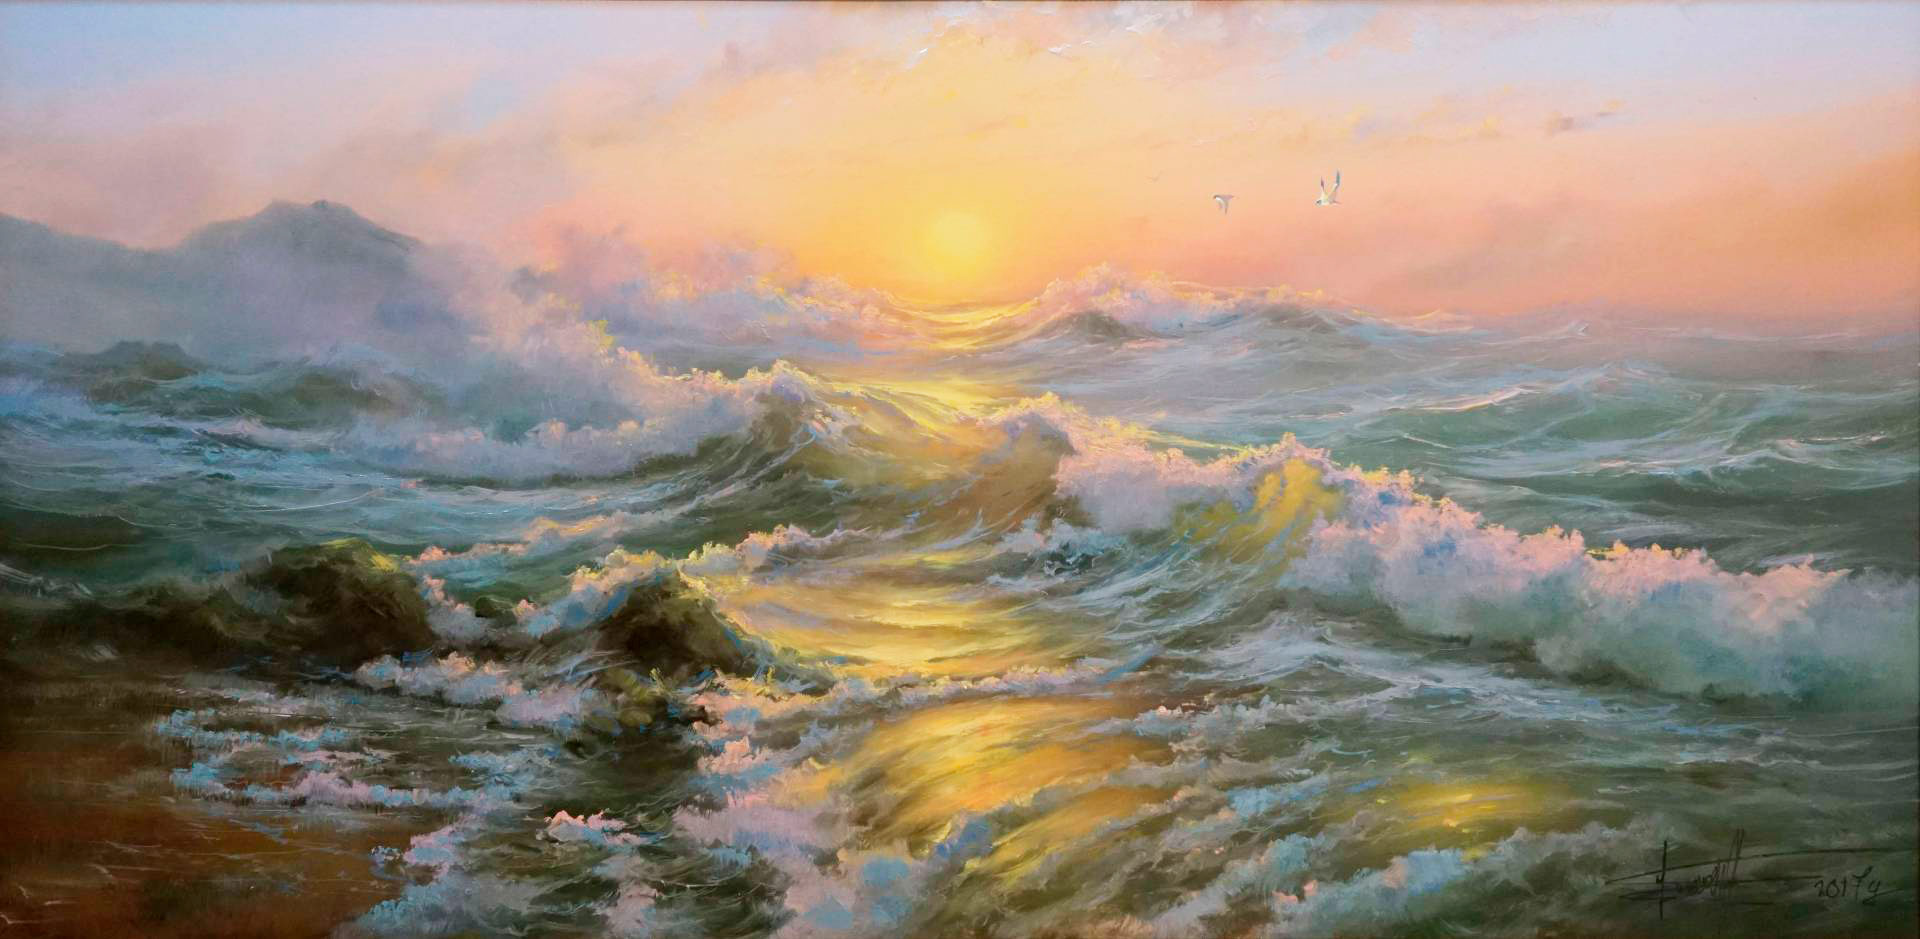 Светлое, теплое море  - 1, Дмитрий Балахонов , Купить картину Масло